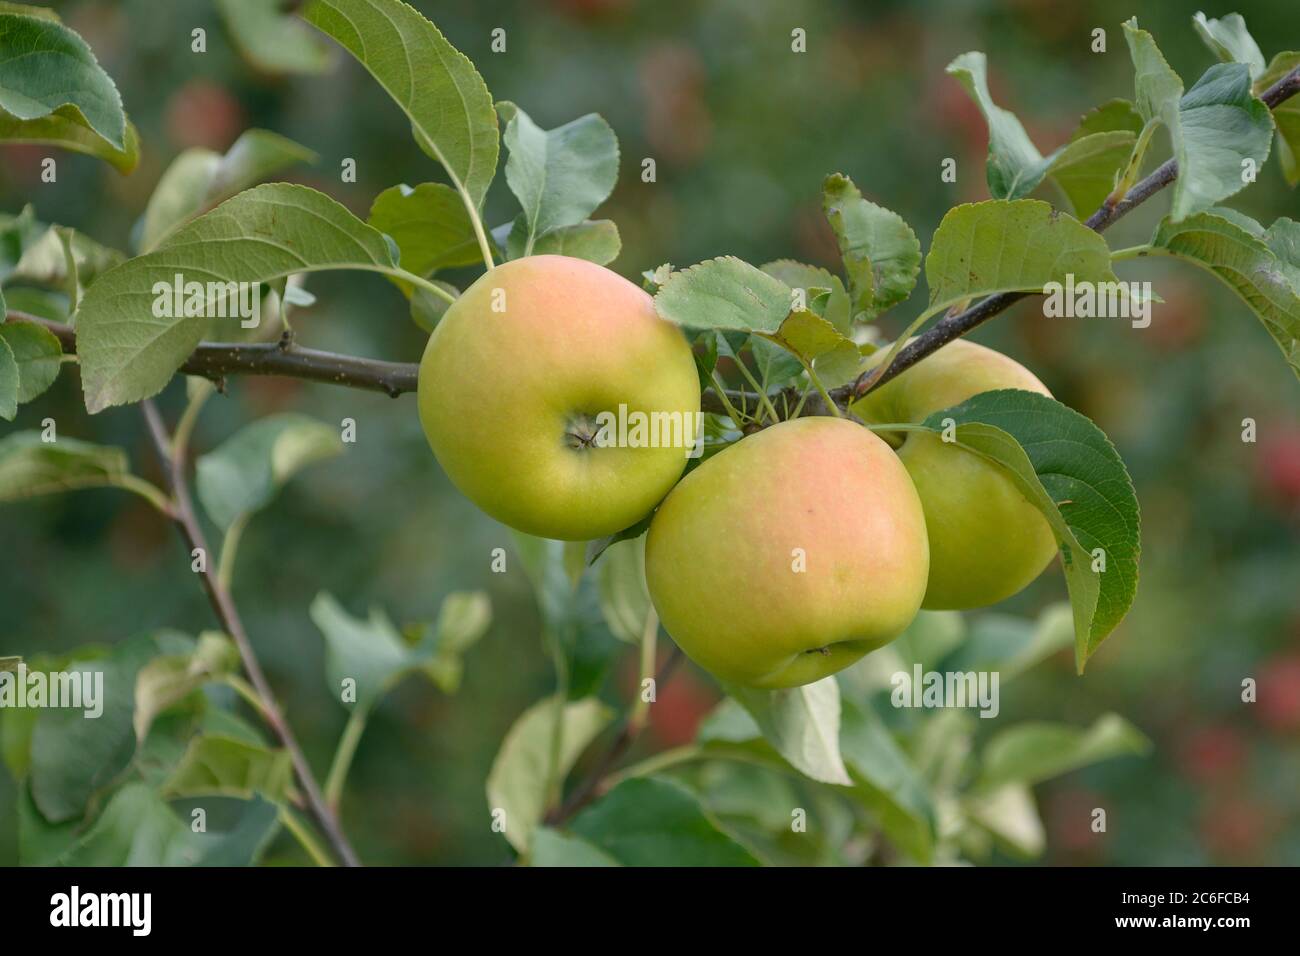 Apfel, Malus domestica Solaris, Apple, Malus domestica Solaris Stock Photo